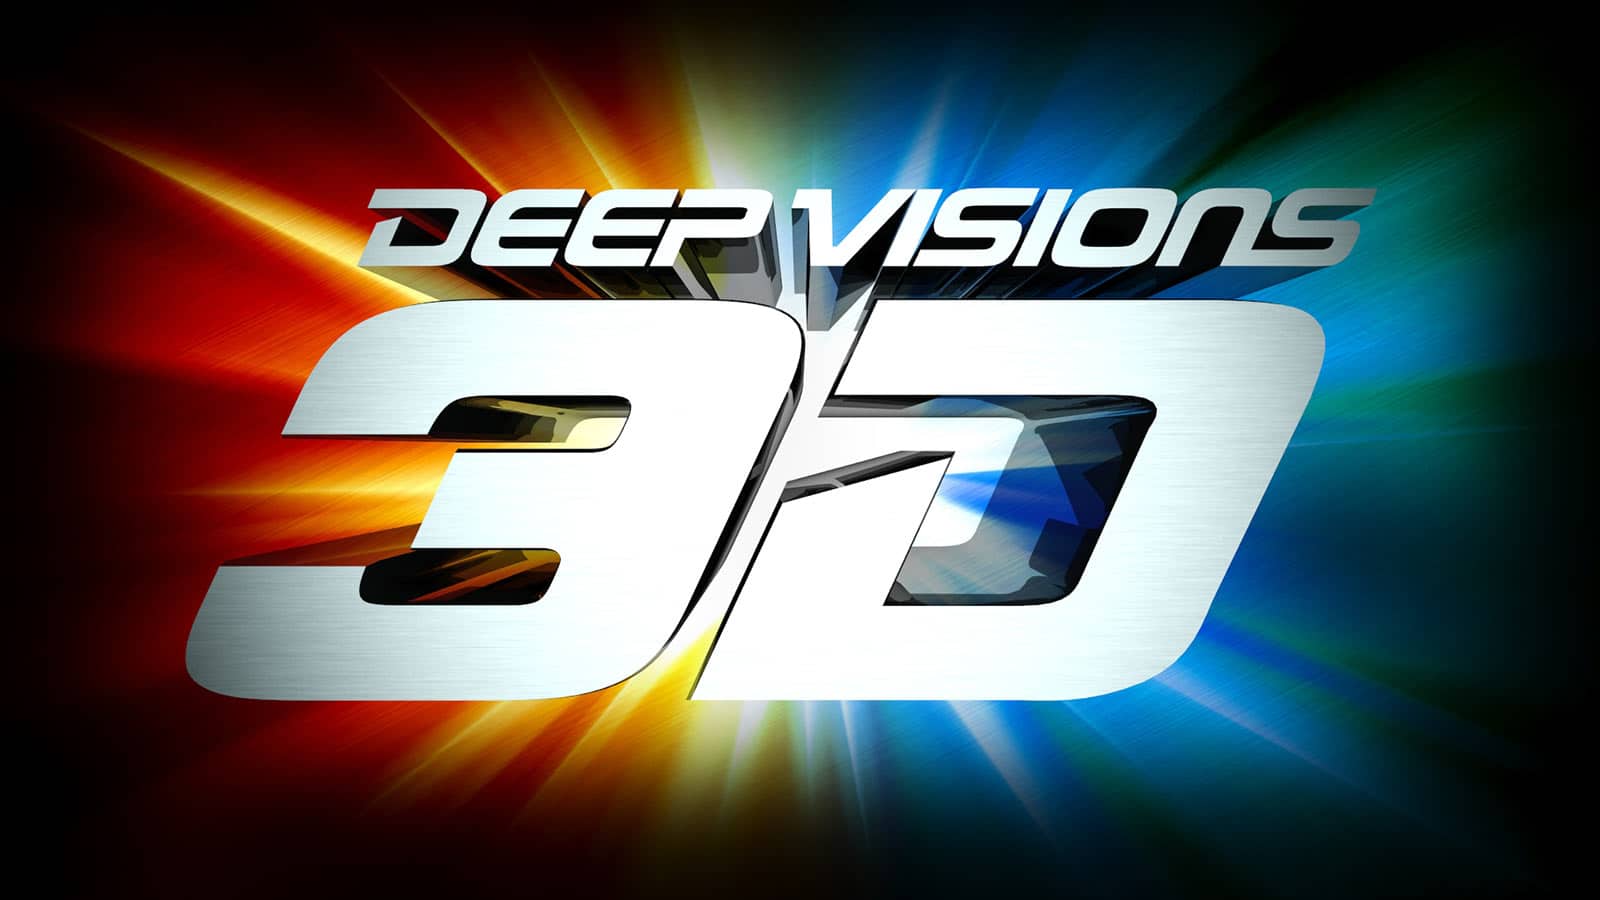 Deep Visions 3D